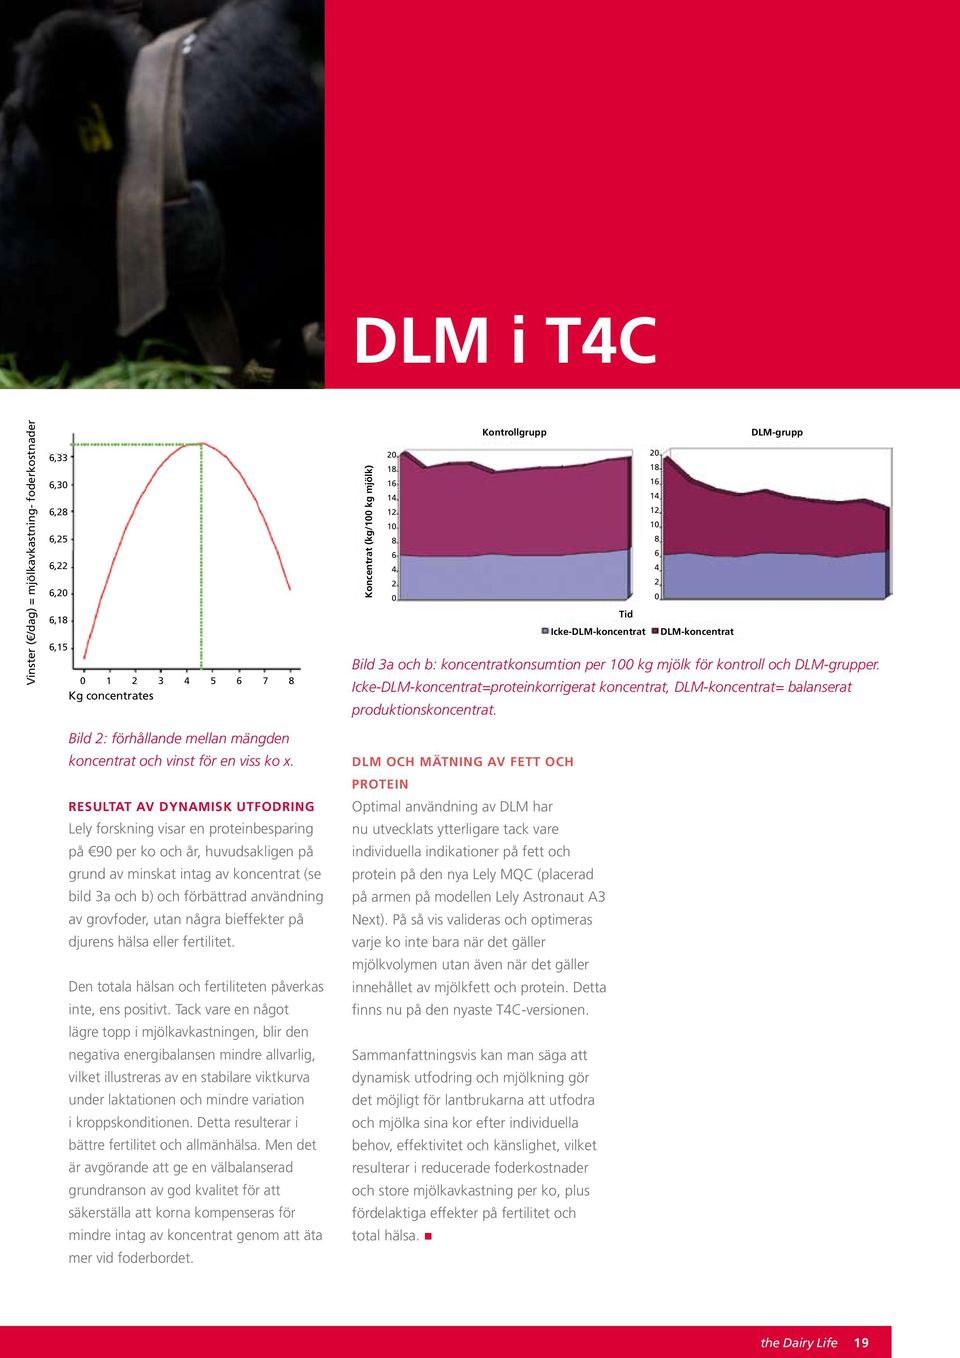 Icke-DLM-koncentrat=proteinkorrigerat koncentrat, DLM-koncentrat= balanserat produktionskoncentrat. Bild 2: förhållande mellan mängden koncentrat och vinst för en viss ko x.